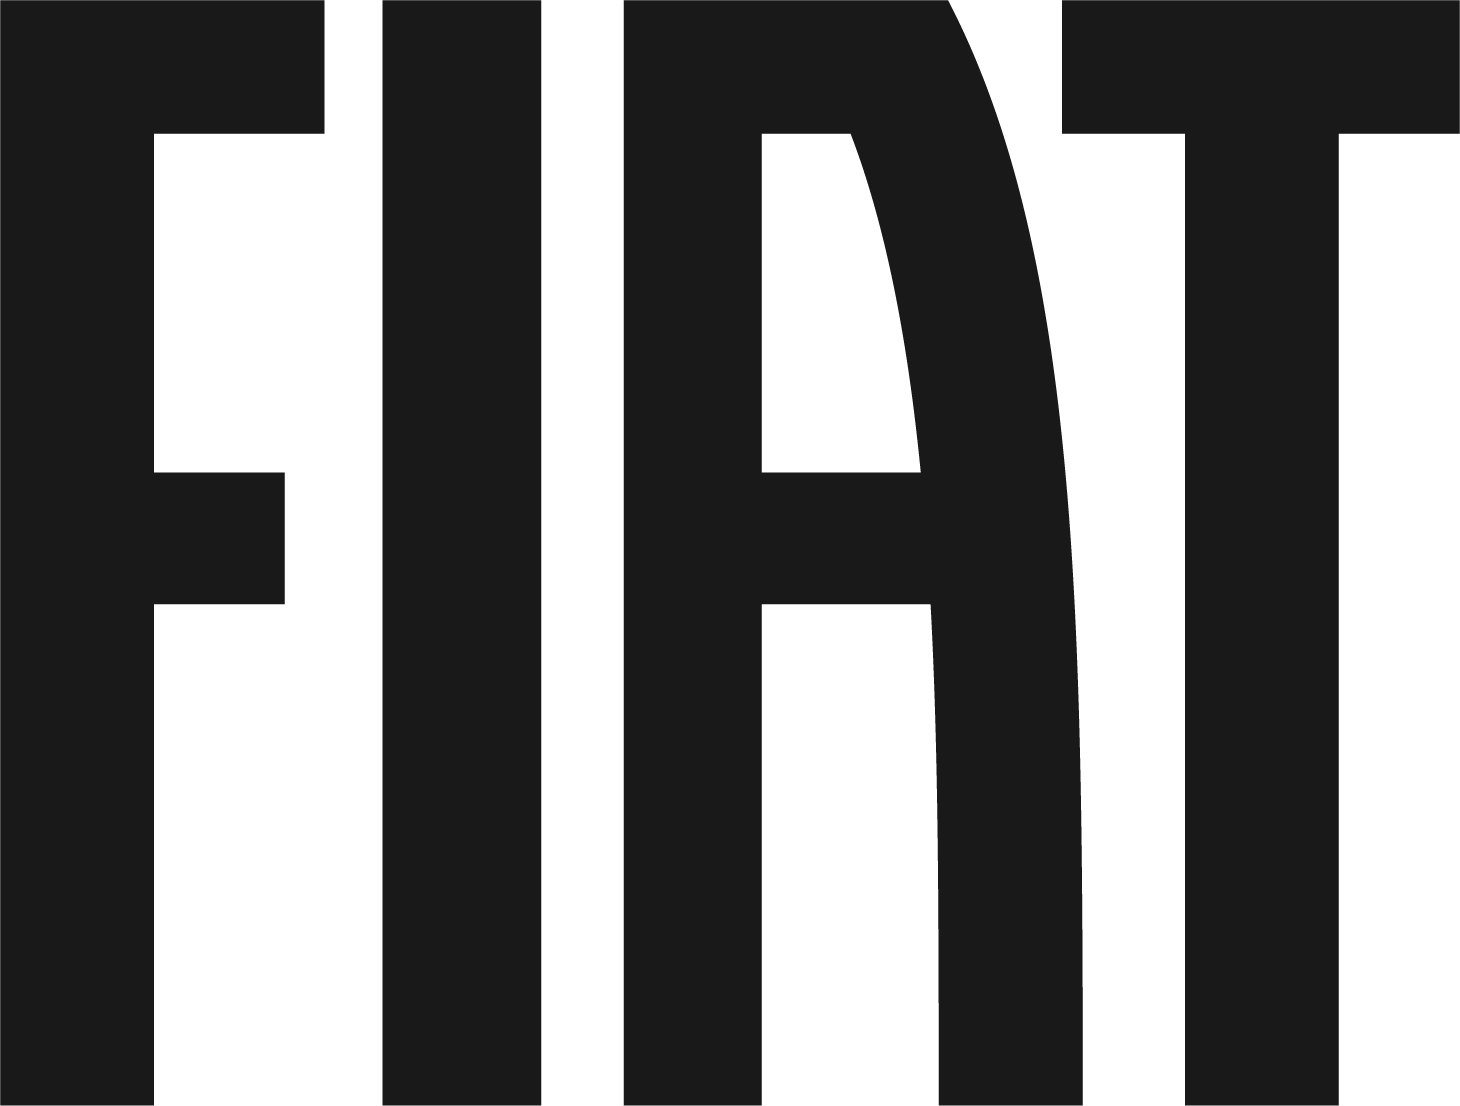 Logo Fiat - Sito Ufficiale di Fiat